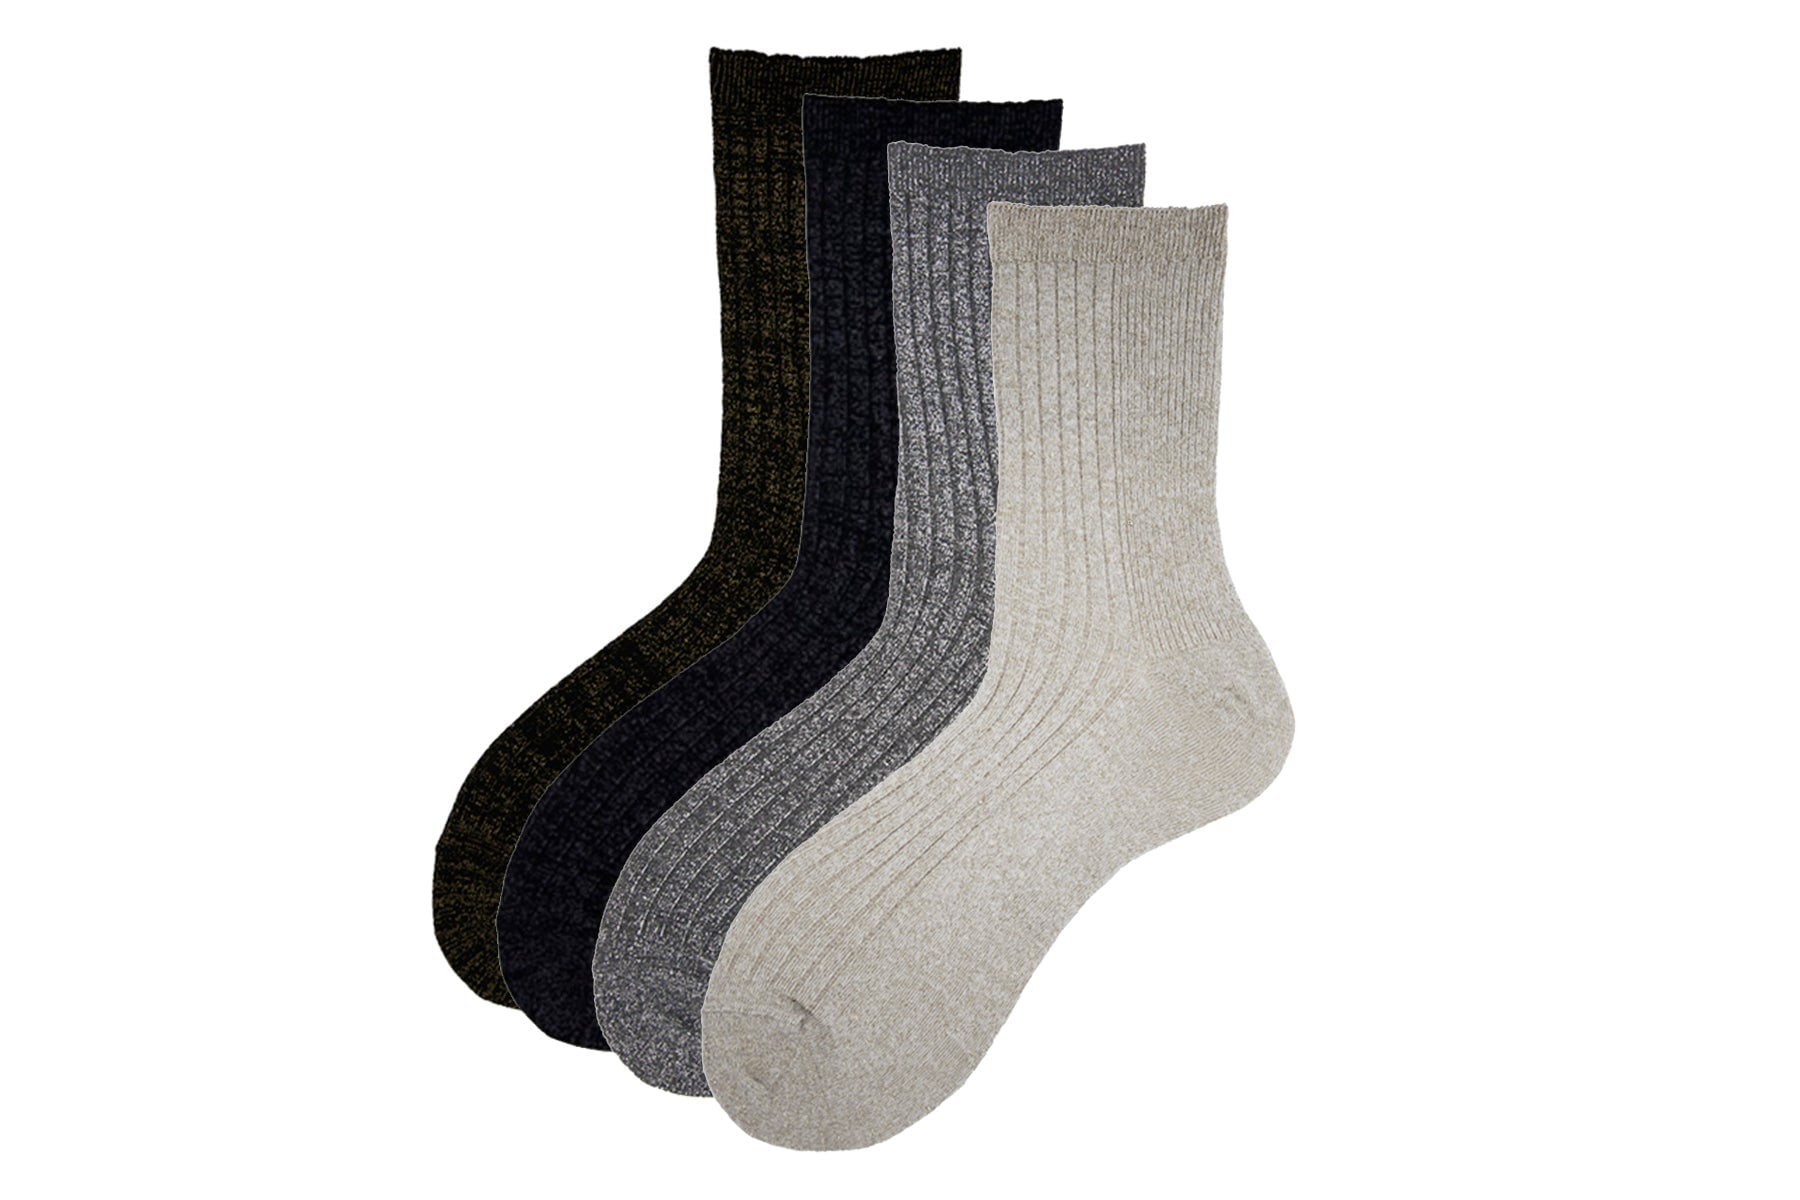 Damen Socken aus Baumwolle in Grau mit silbernem Glitzerfaden - N.92 Damen Socken Alto Milano 